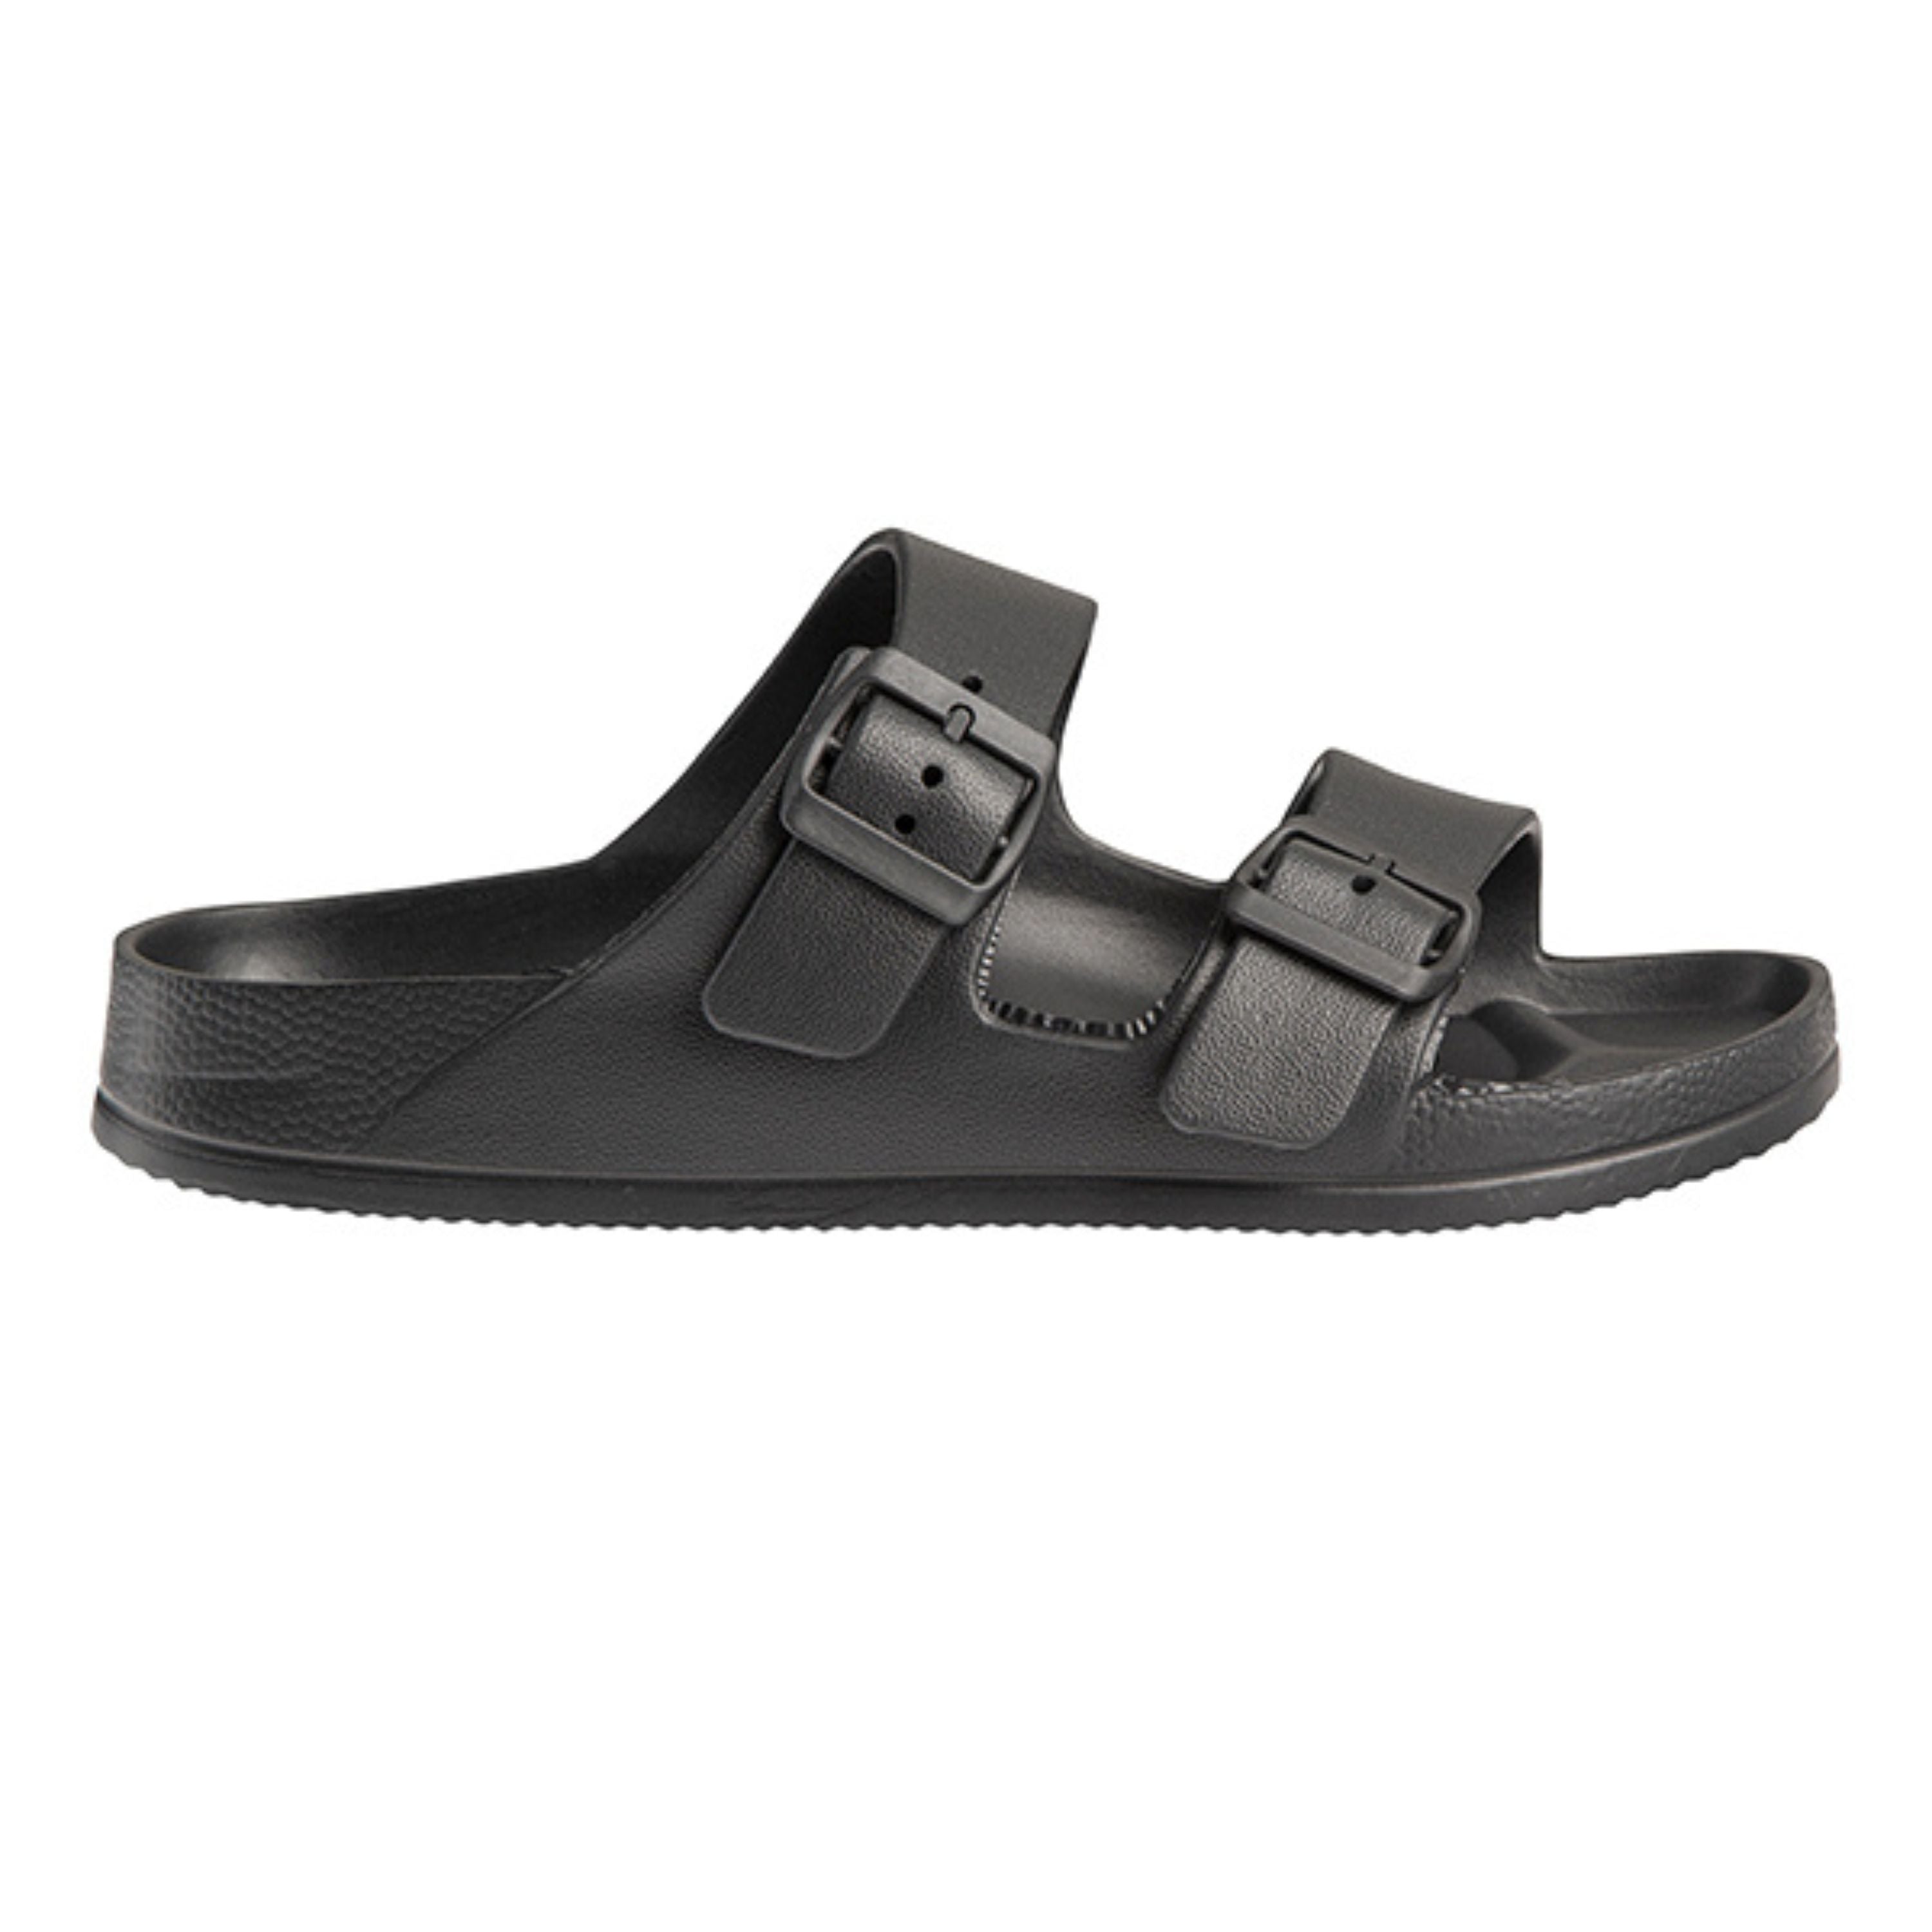 "Confort" sandals - Unisex